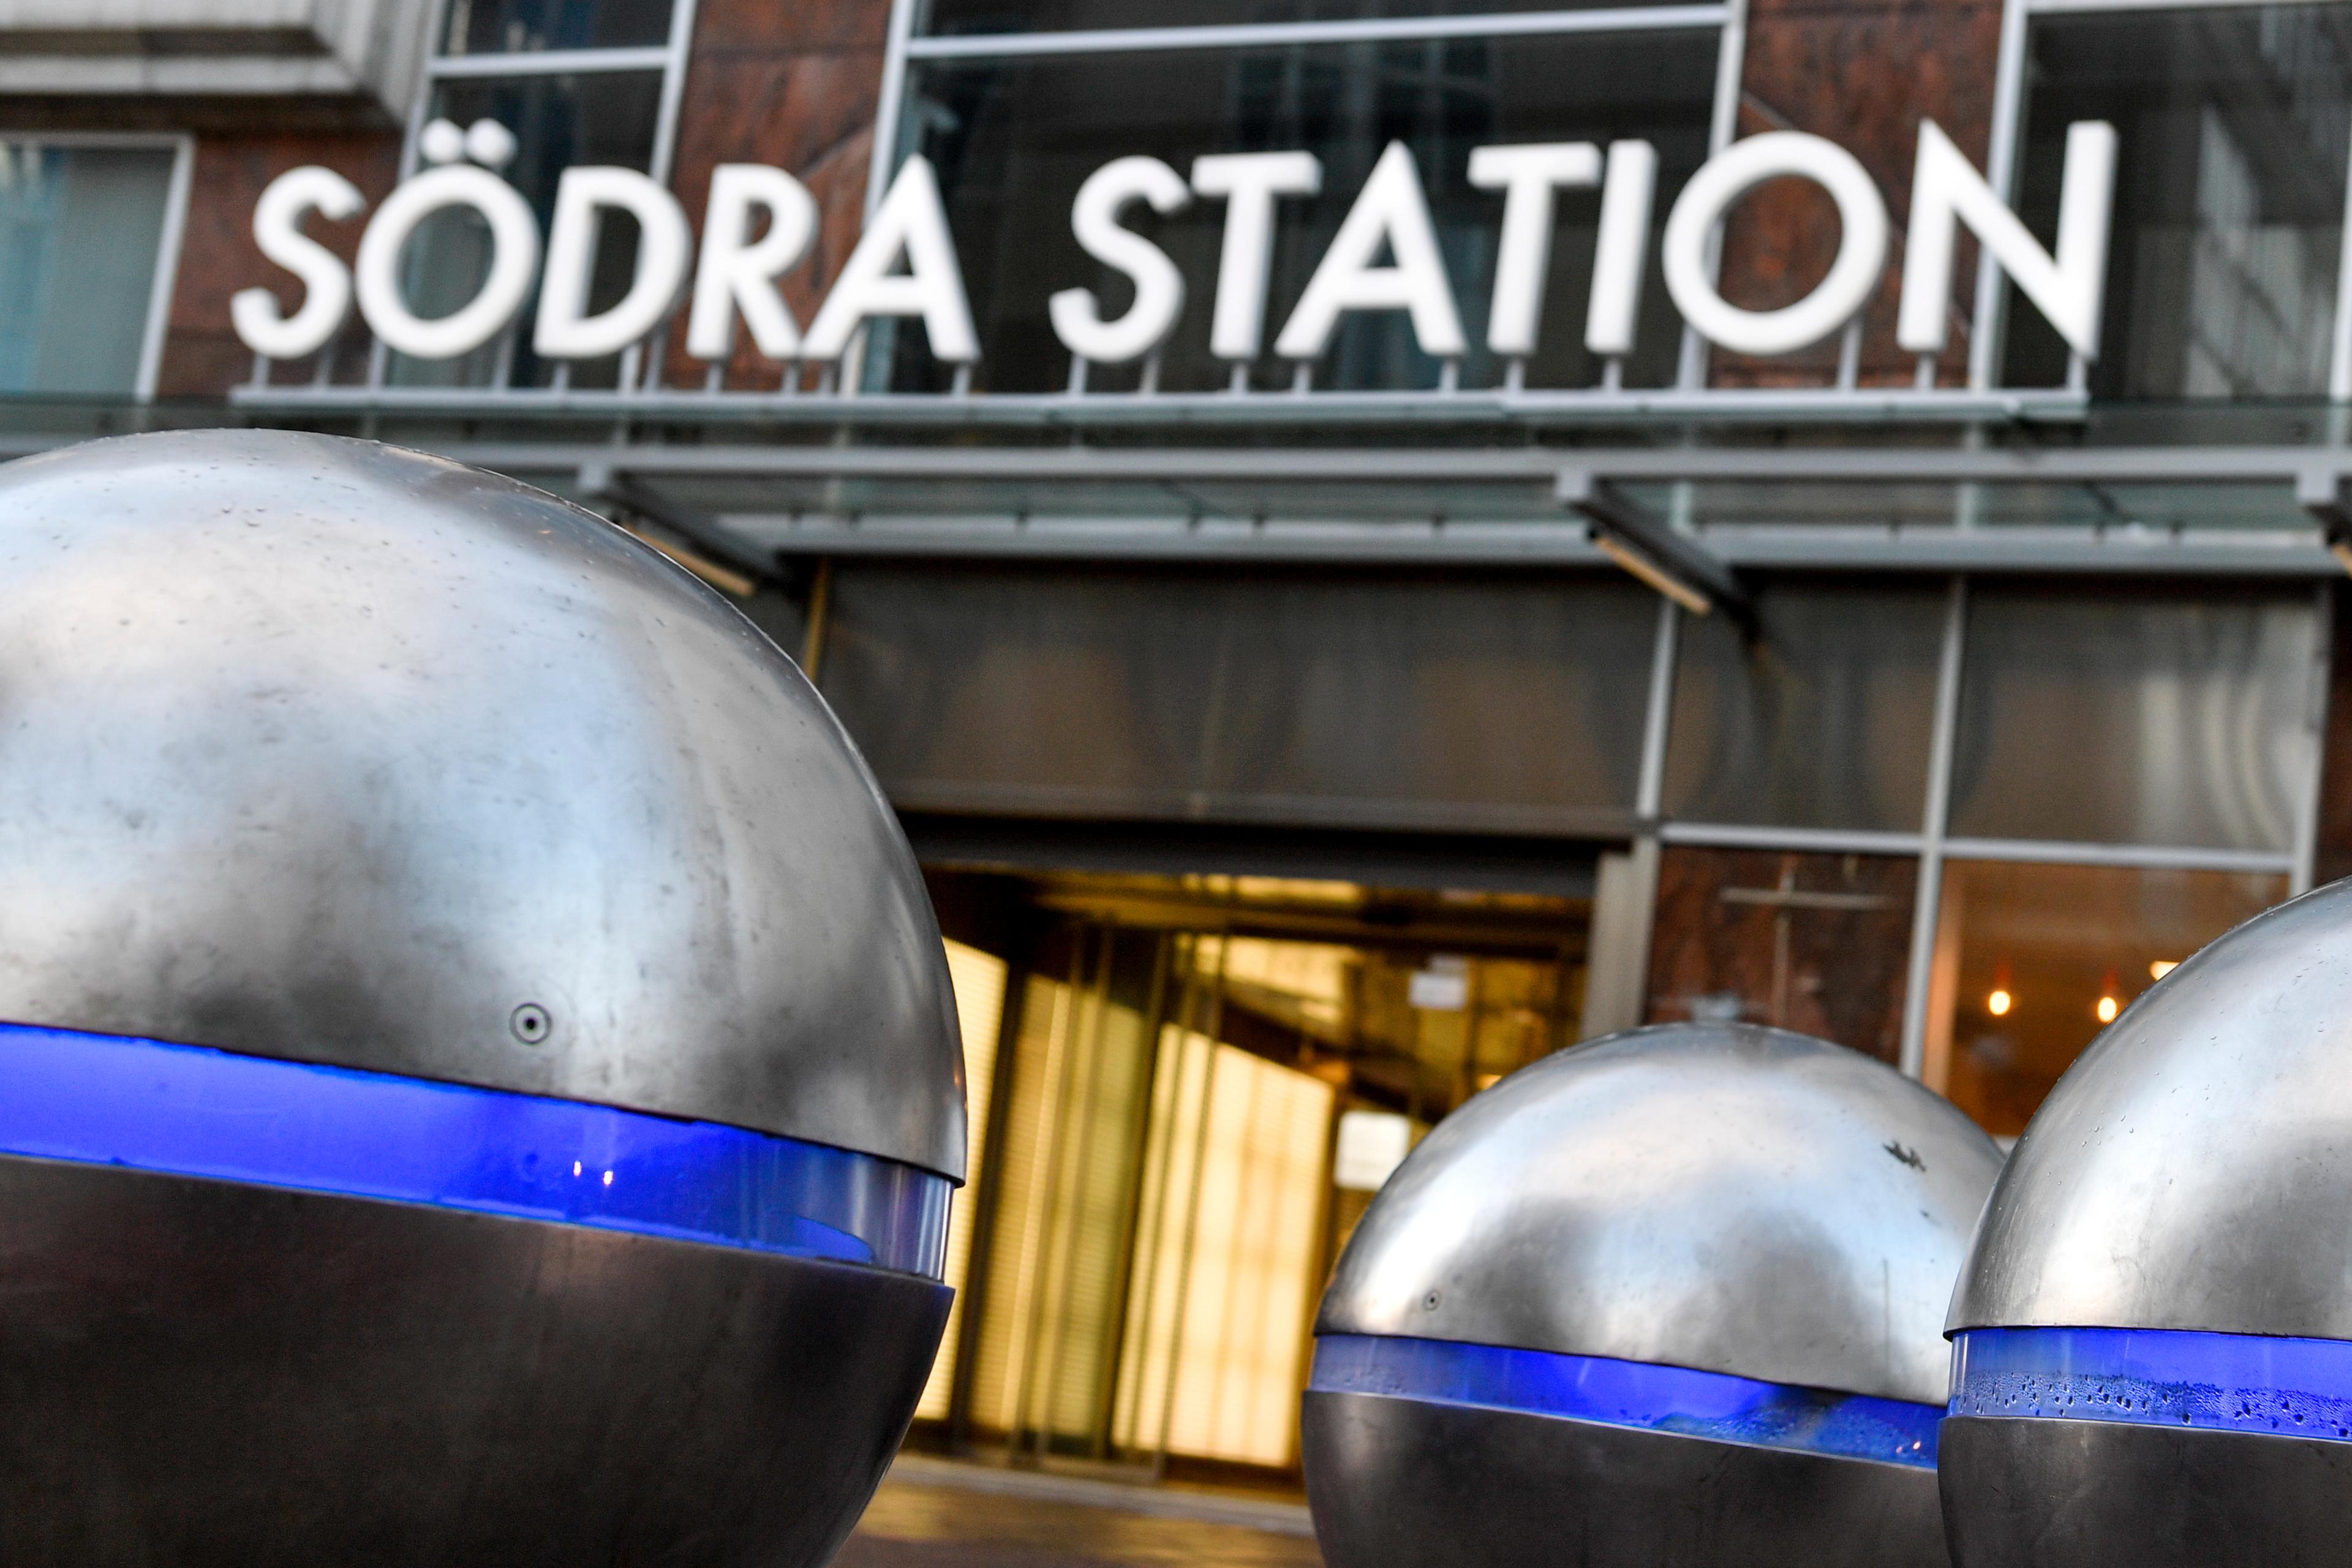 Pendeltågsstationen Södra station i Stockholm. Arkivbild. Foto: Alexander Larsson Vierth/TT